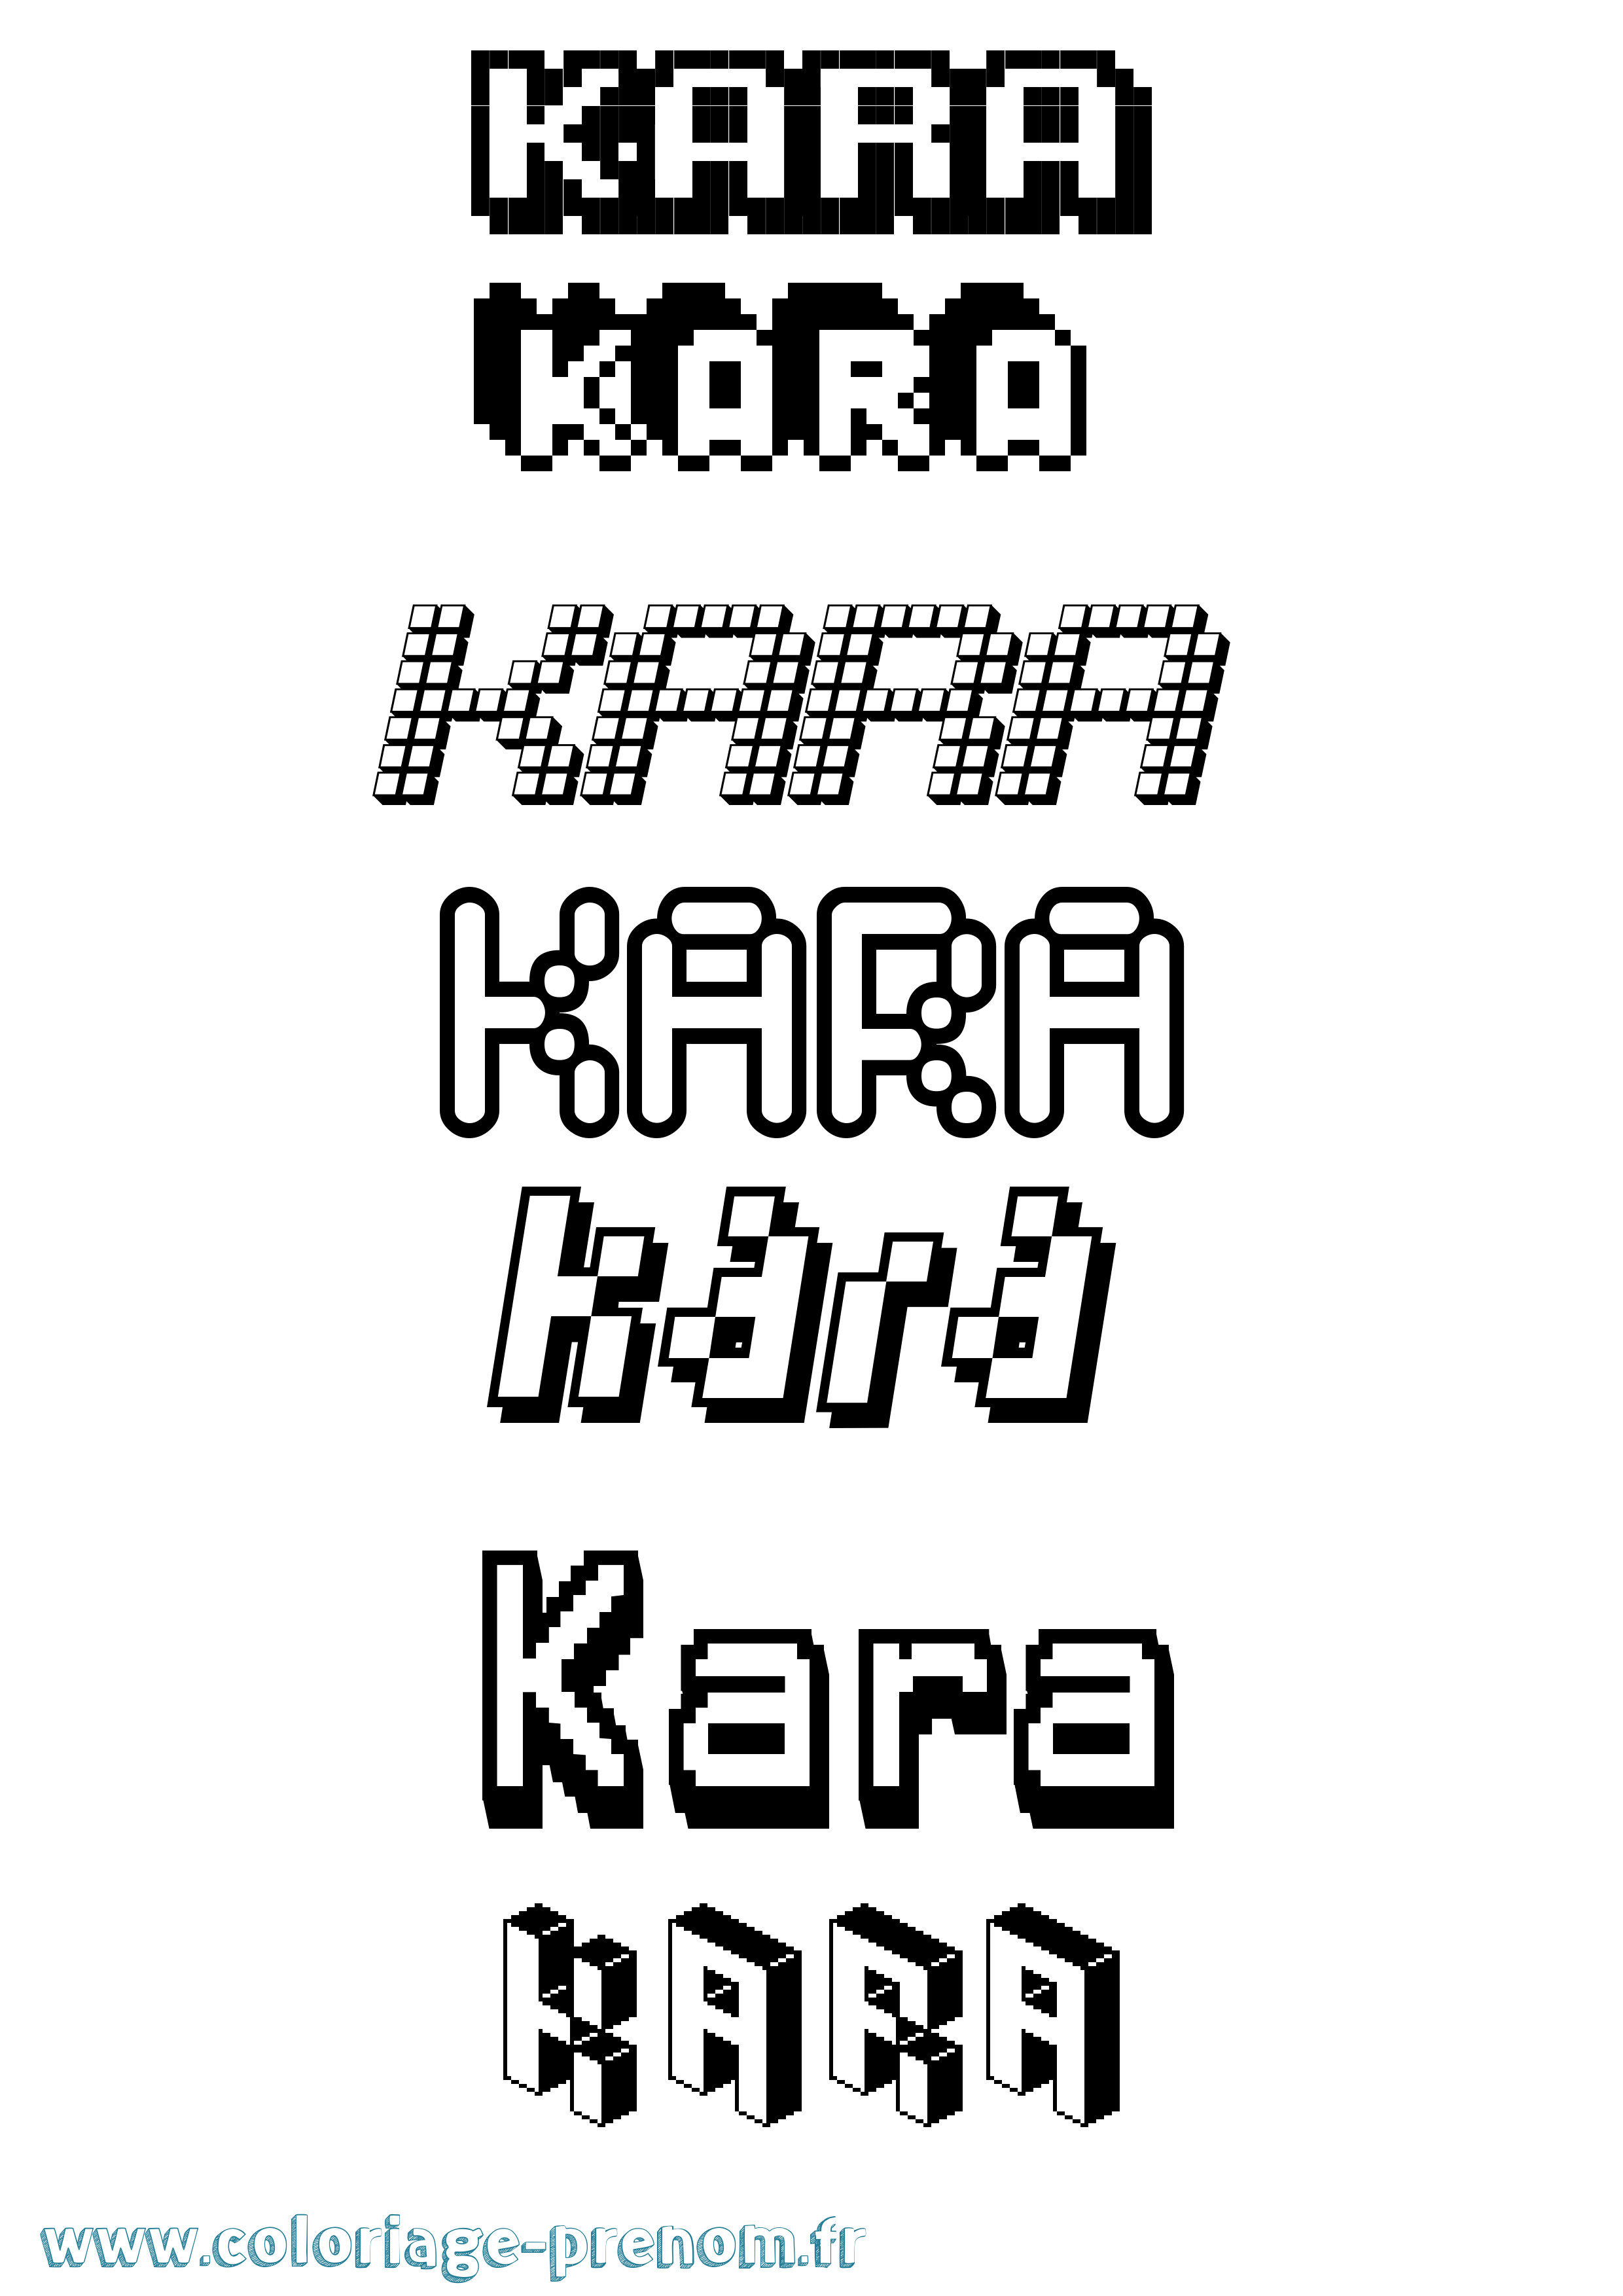 Coloriage prénom Kara Pixel